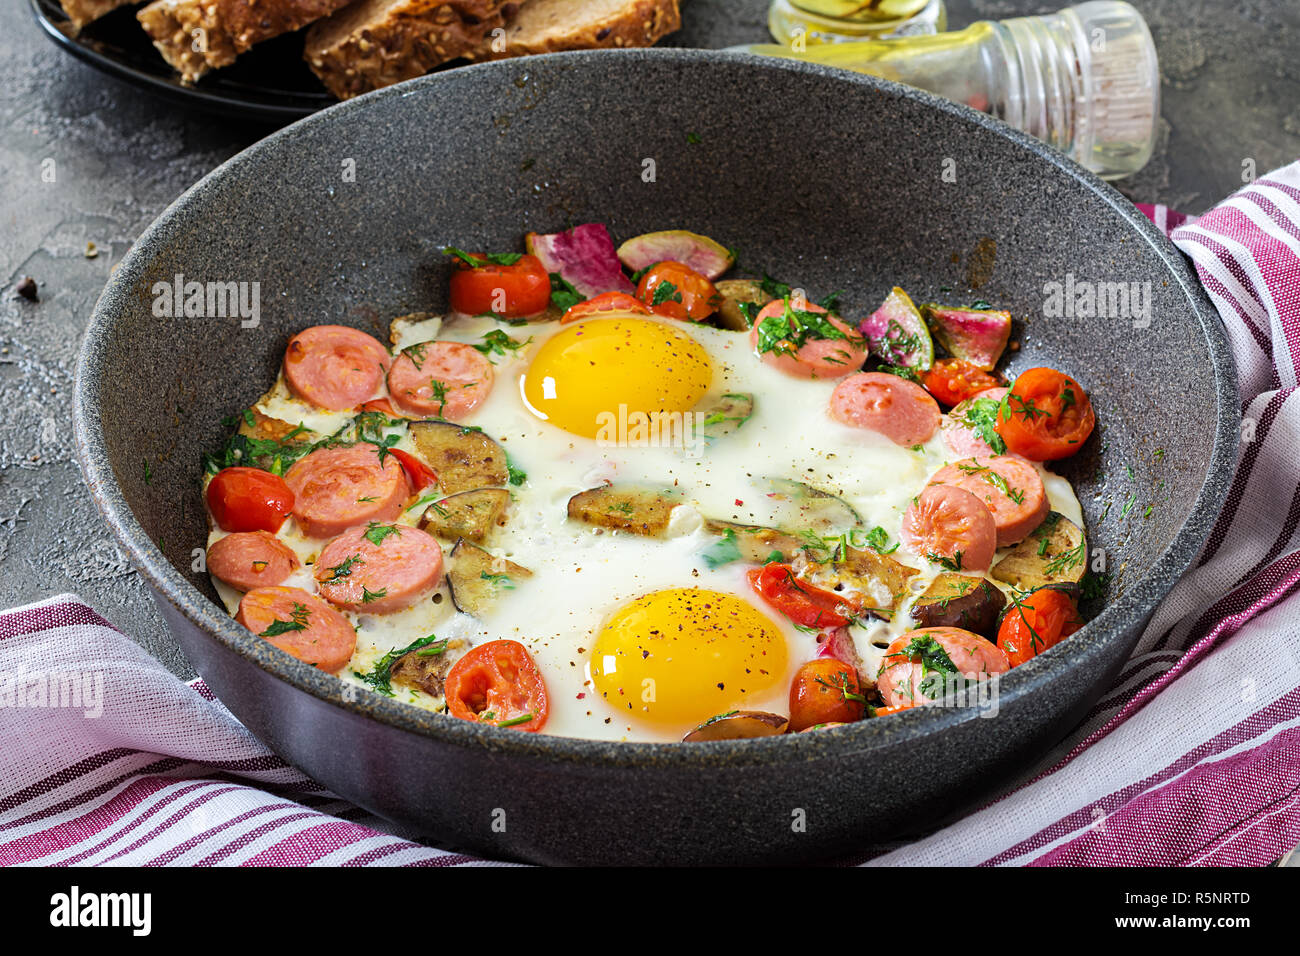 Pfanne mit lecker gekochte Eier, Würstchen und Gemüse auf grau Tabelle.  Frühstück Stockfotografie - Alamy